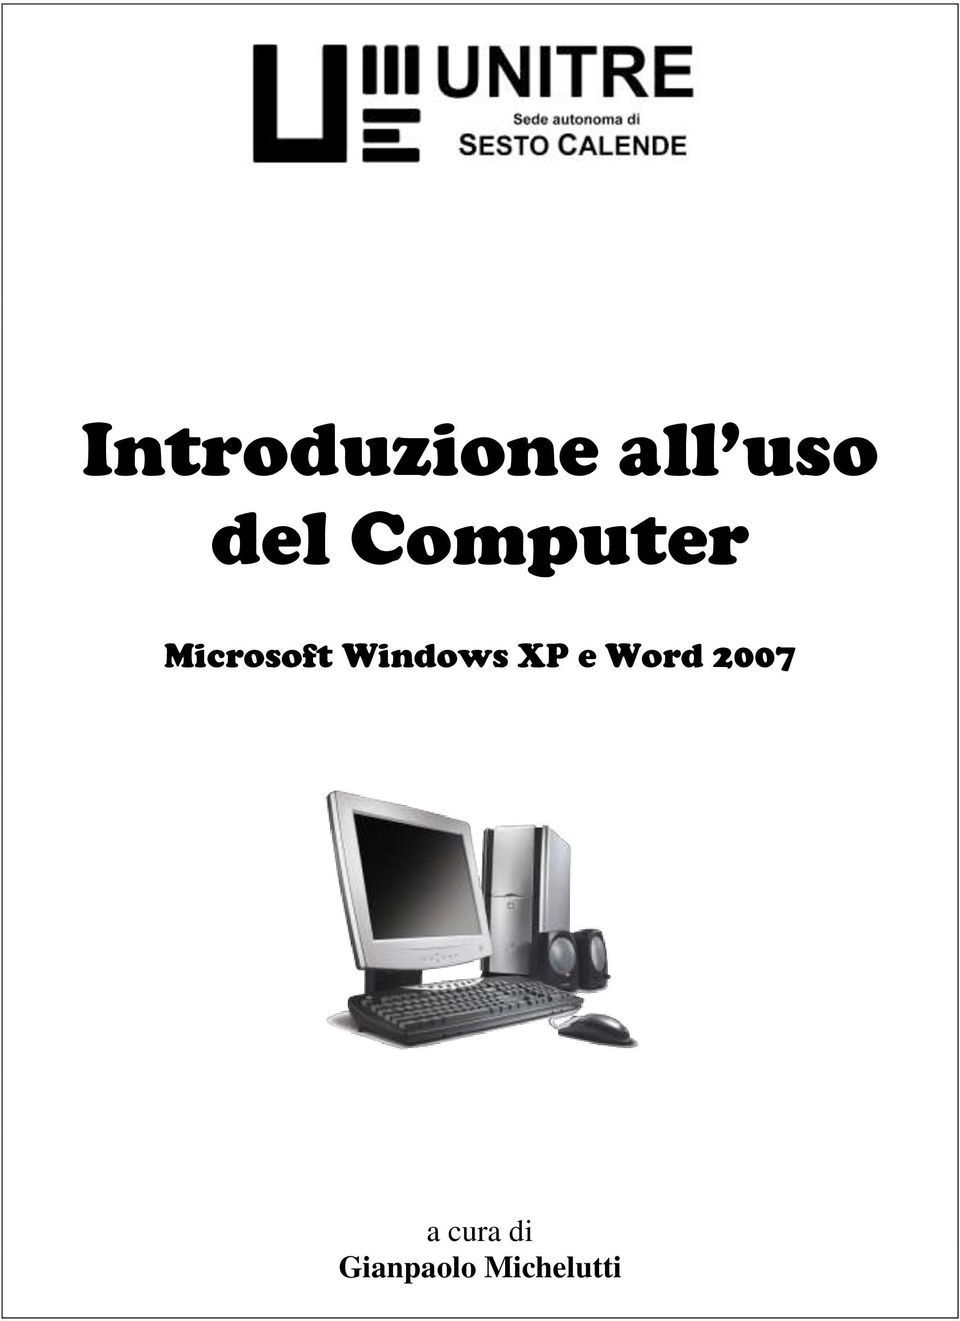 Windows XP e Word 2007 a